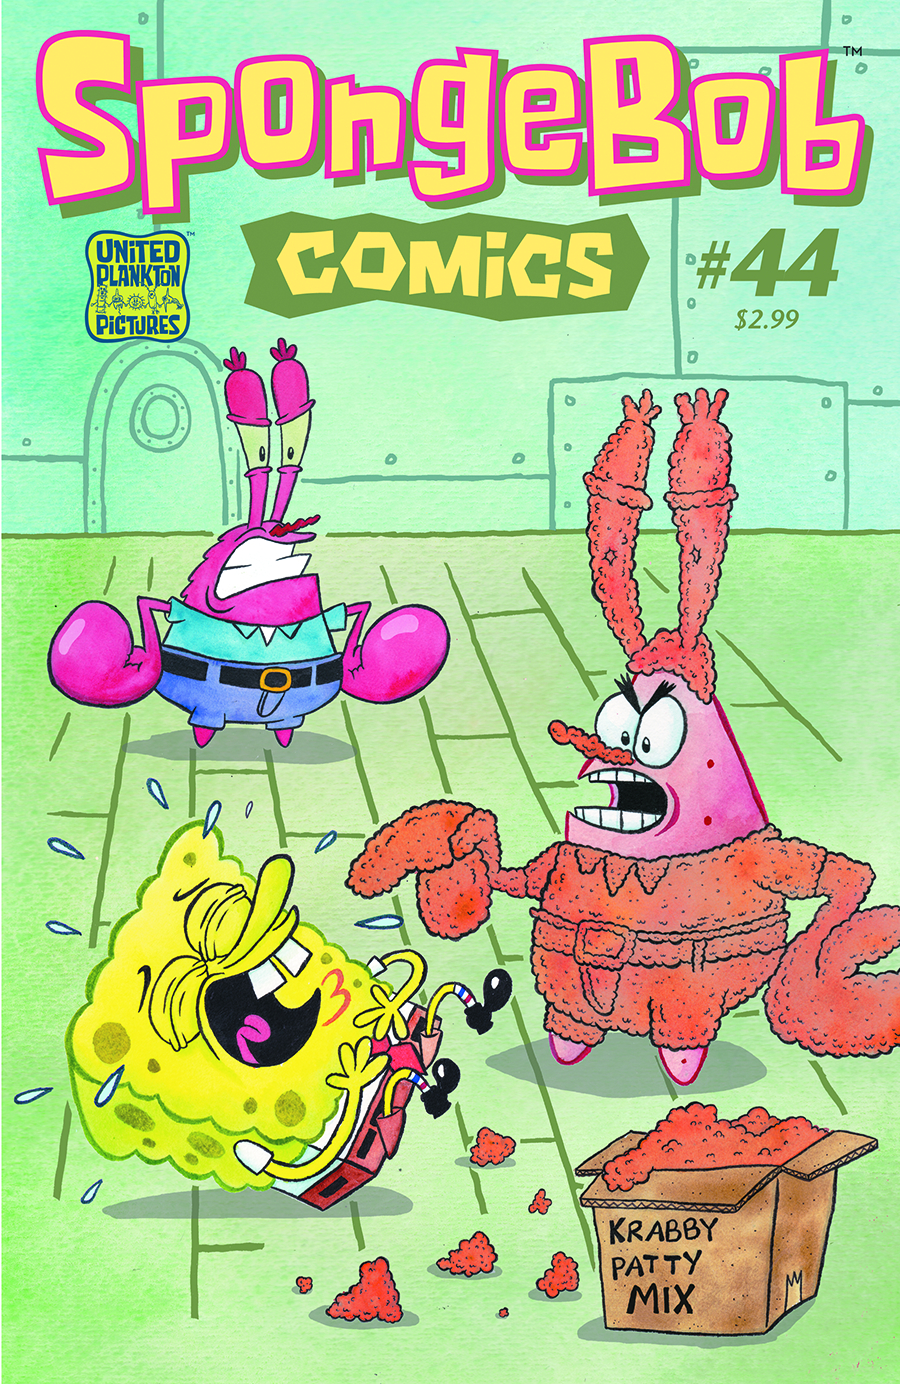 SPONGEBOB COMICS #44